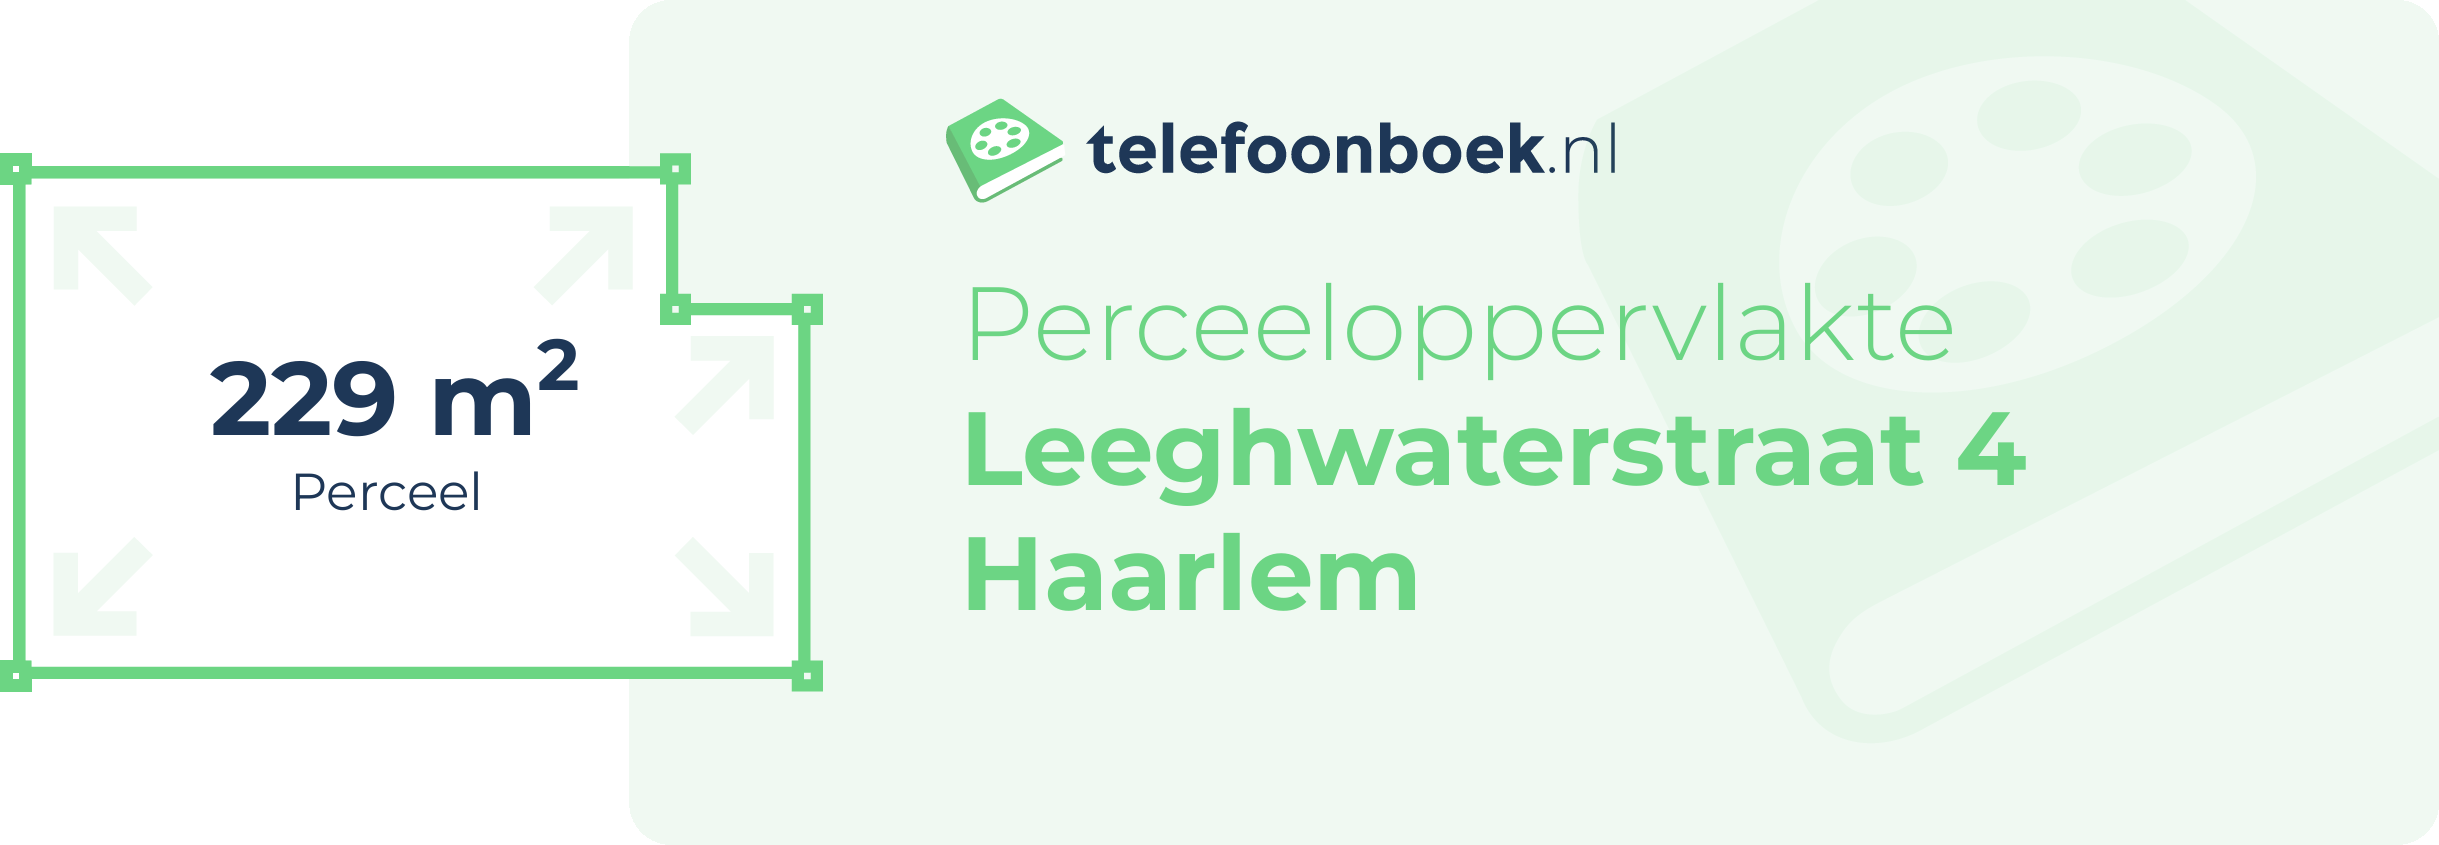 Perceeloppervlakte Leeghwaterstraat 4 Haarlem